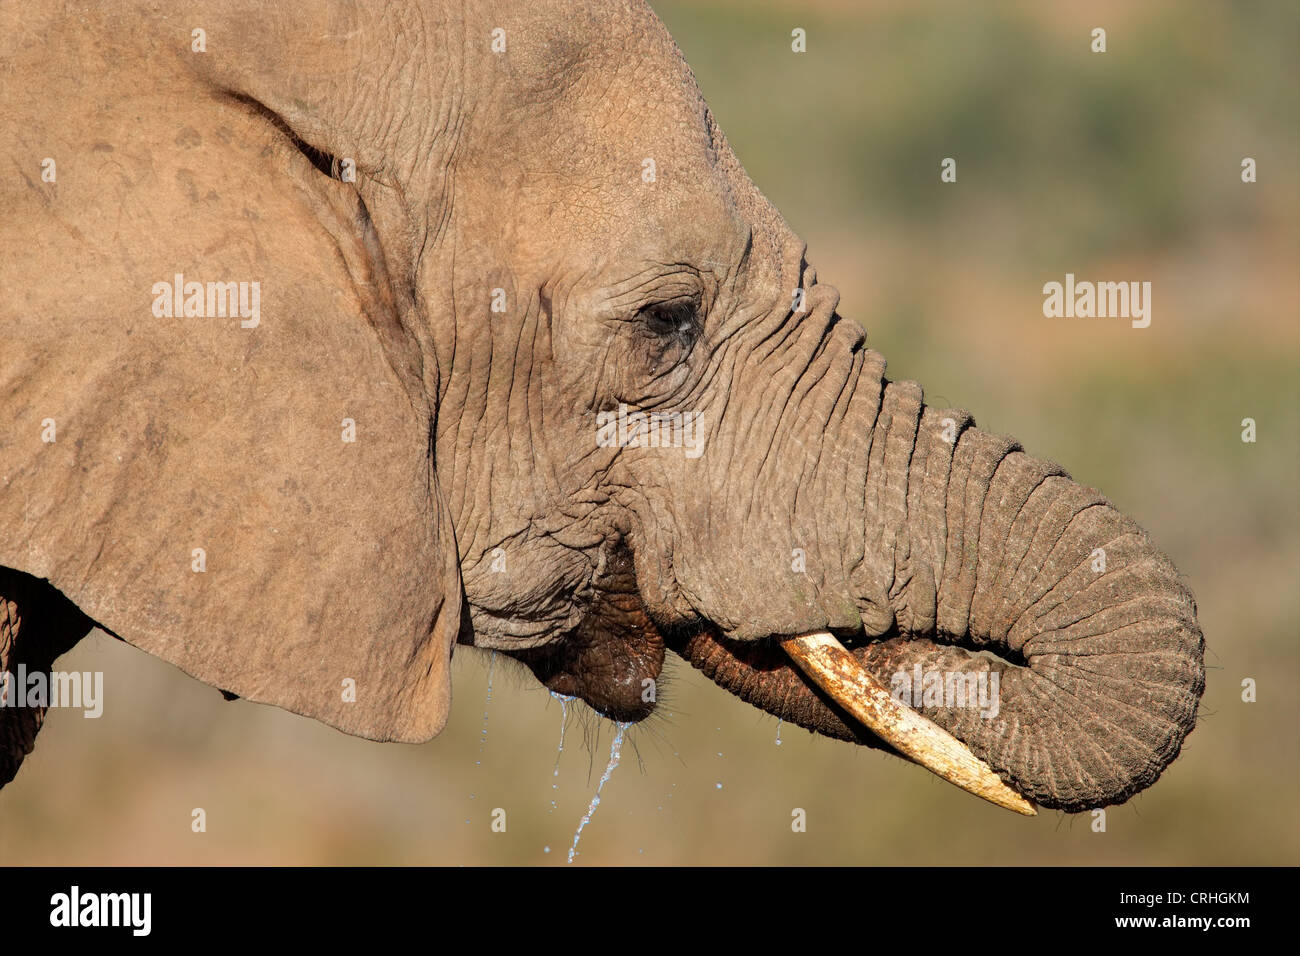 Portrait de l'éléphant africain (Loxodonta africana) eau potable, Afrique du Sud Banque D'Images